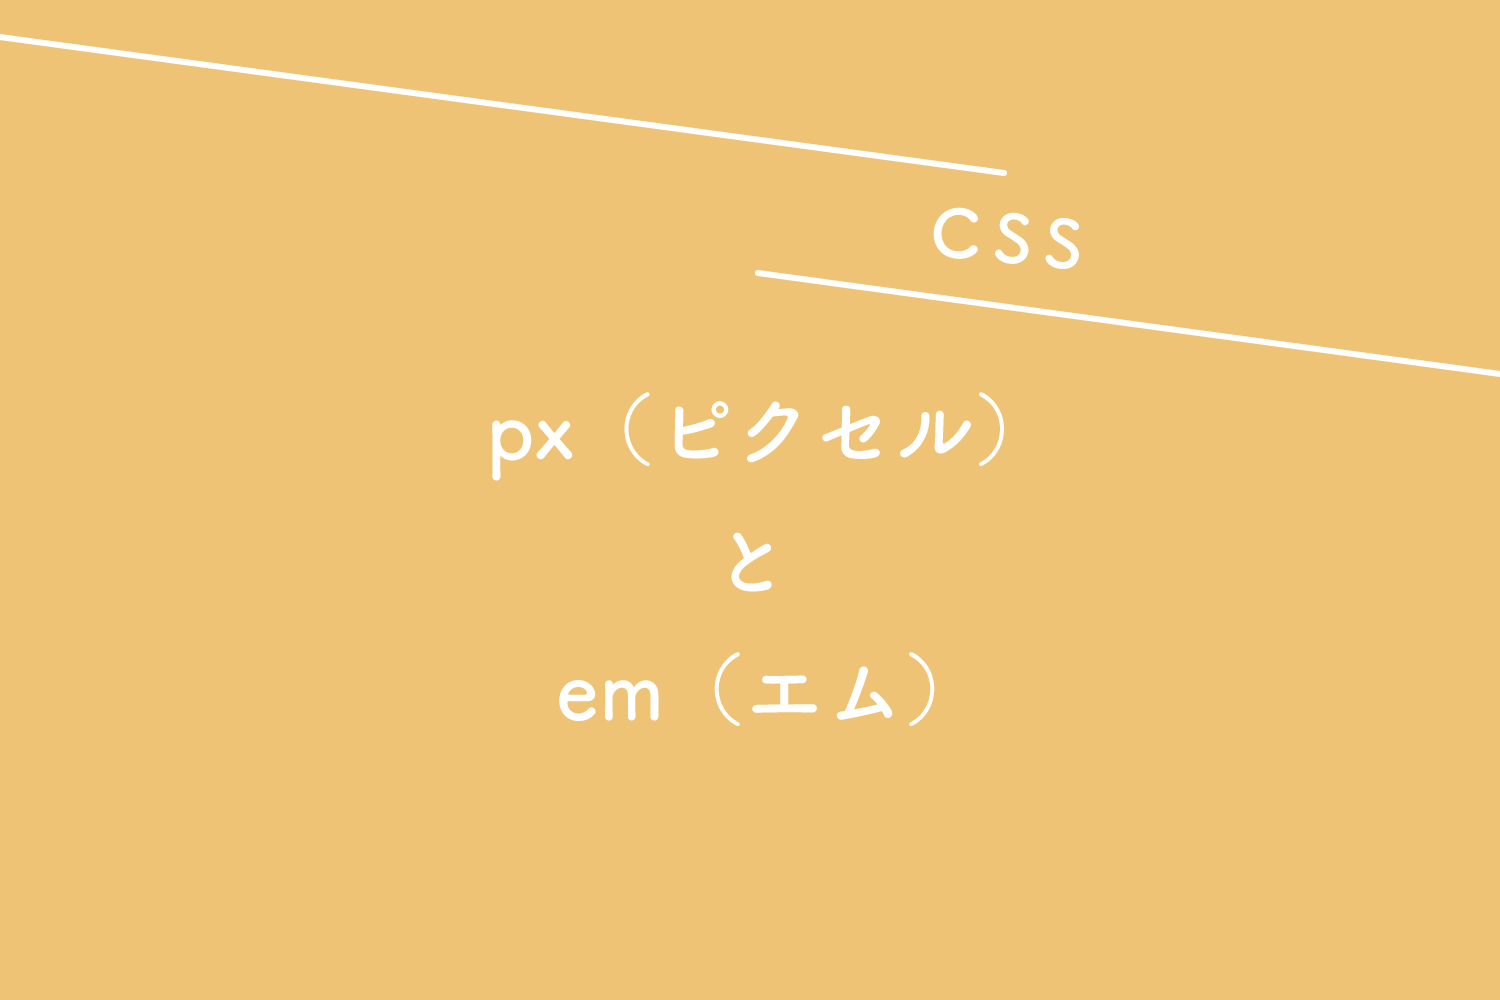 【CSS】px（ピクセル）とem（エム）